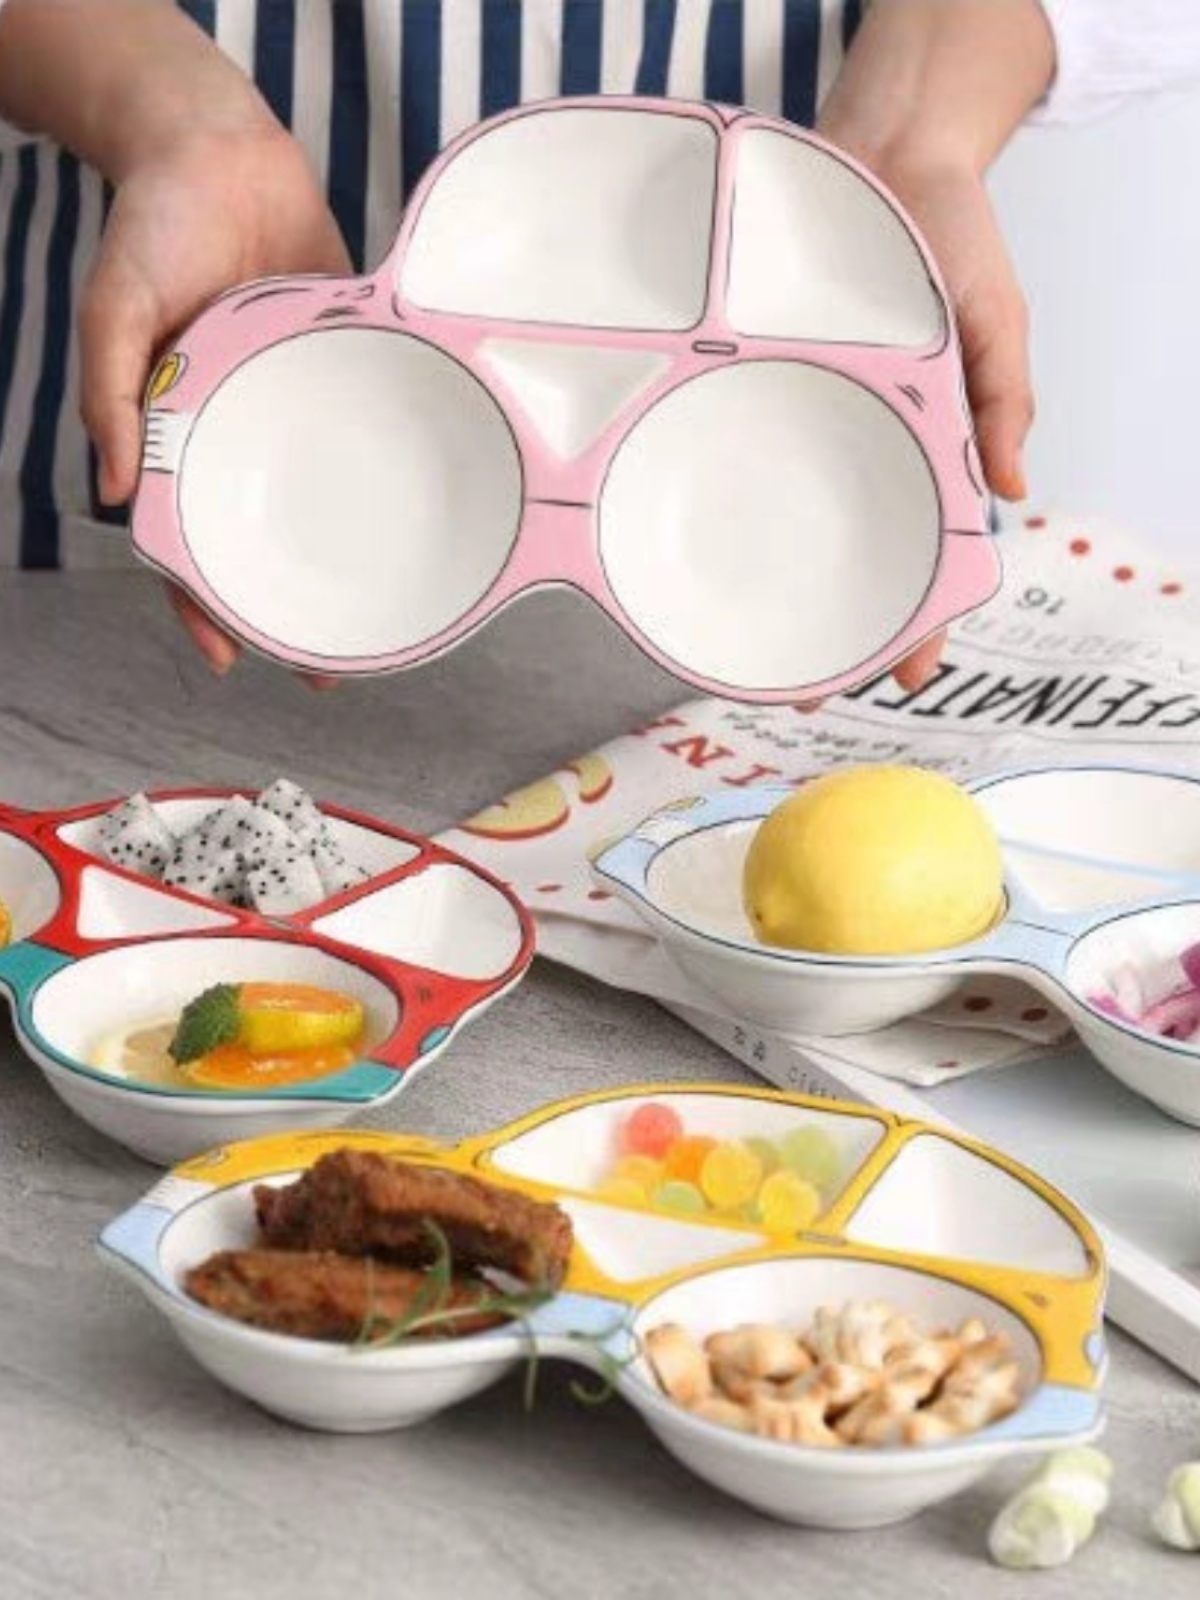 儿童餐具宝宝餐盘创意网红可爱卡通分隔盘陶瓷早餐点心碗碟包邮